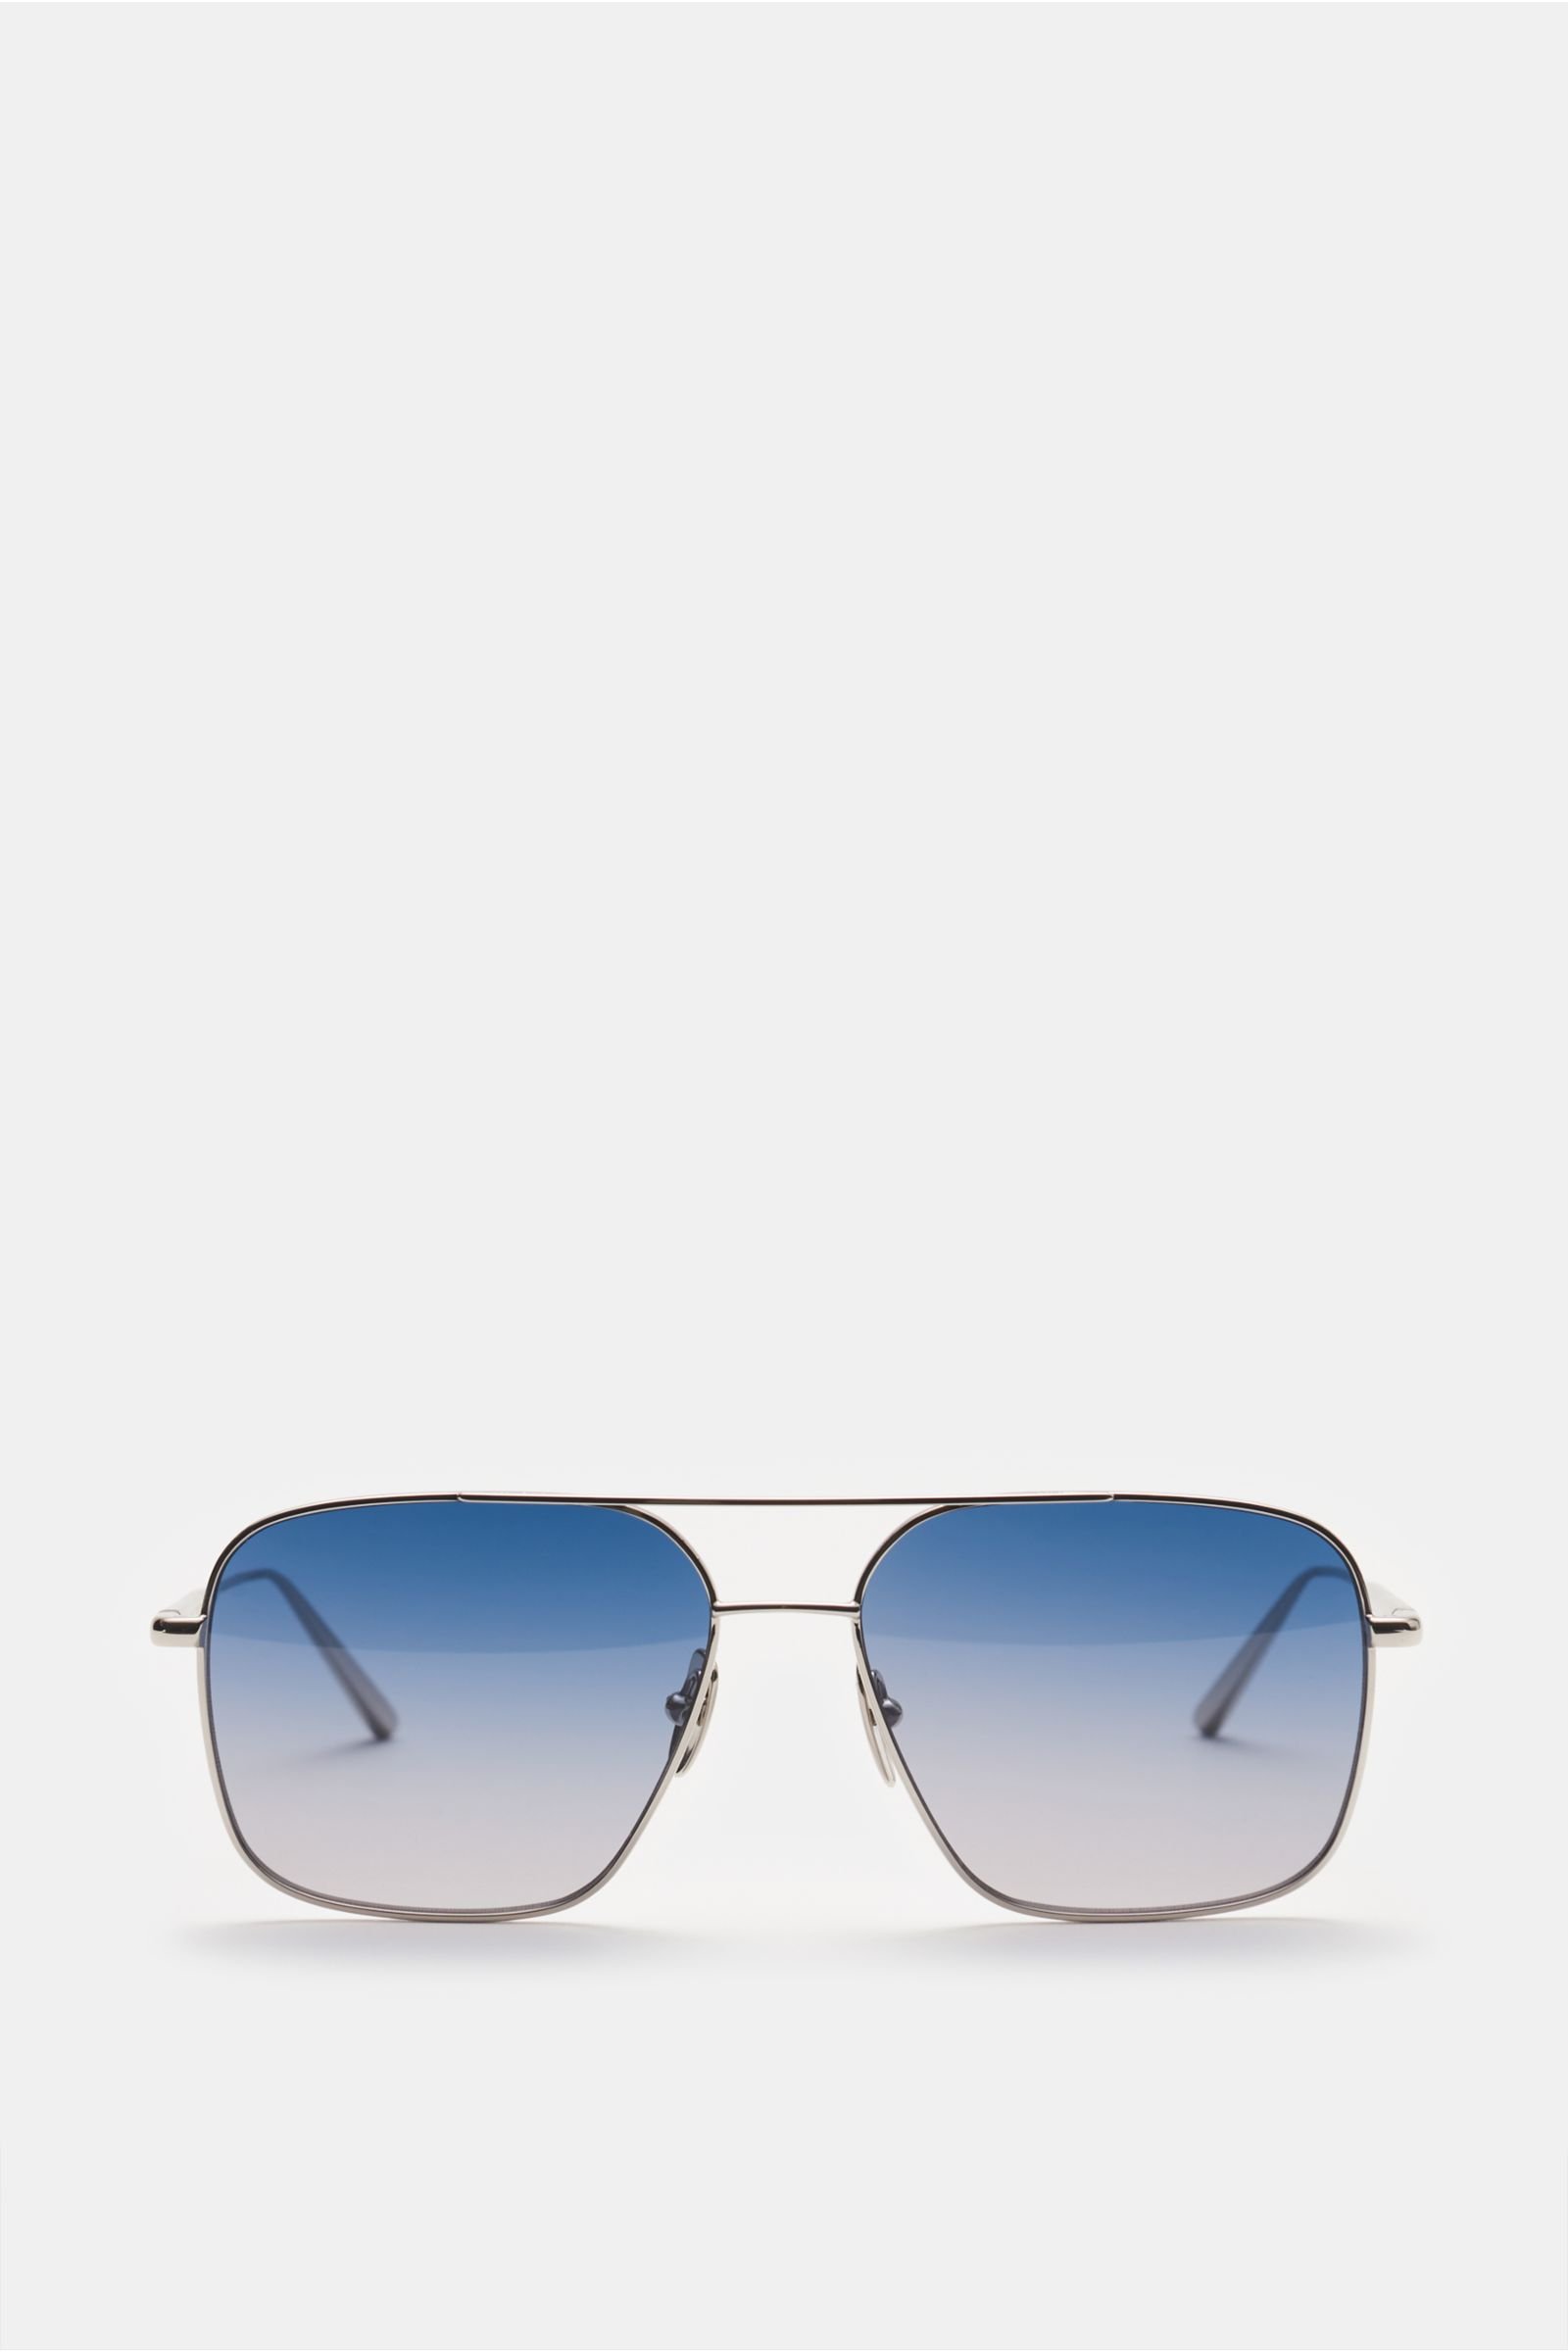 Sonnenbrille 'Aviator' silber/rauchblau/grau